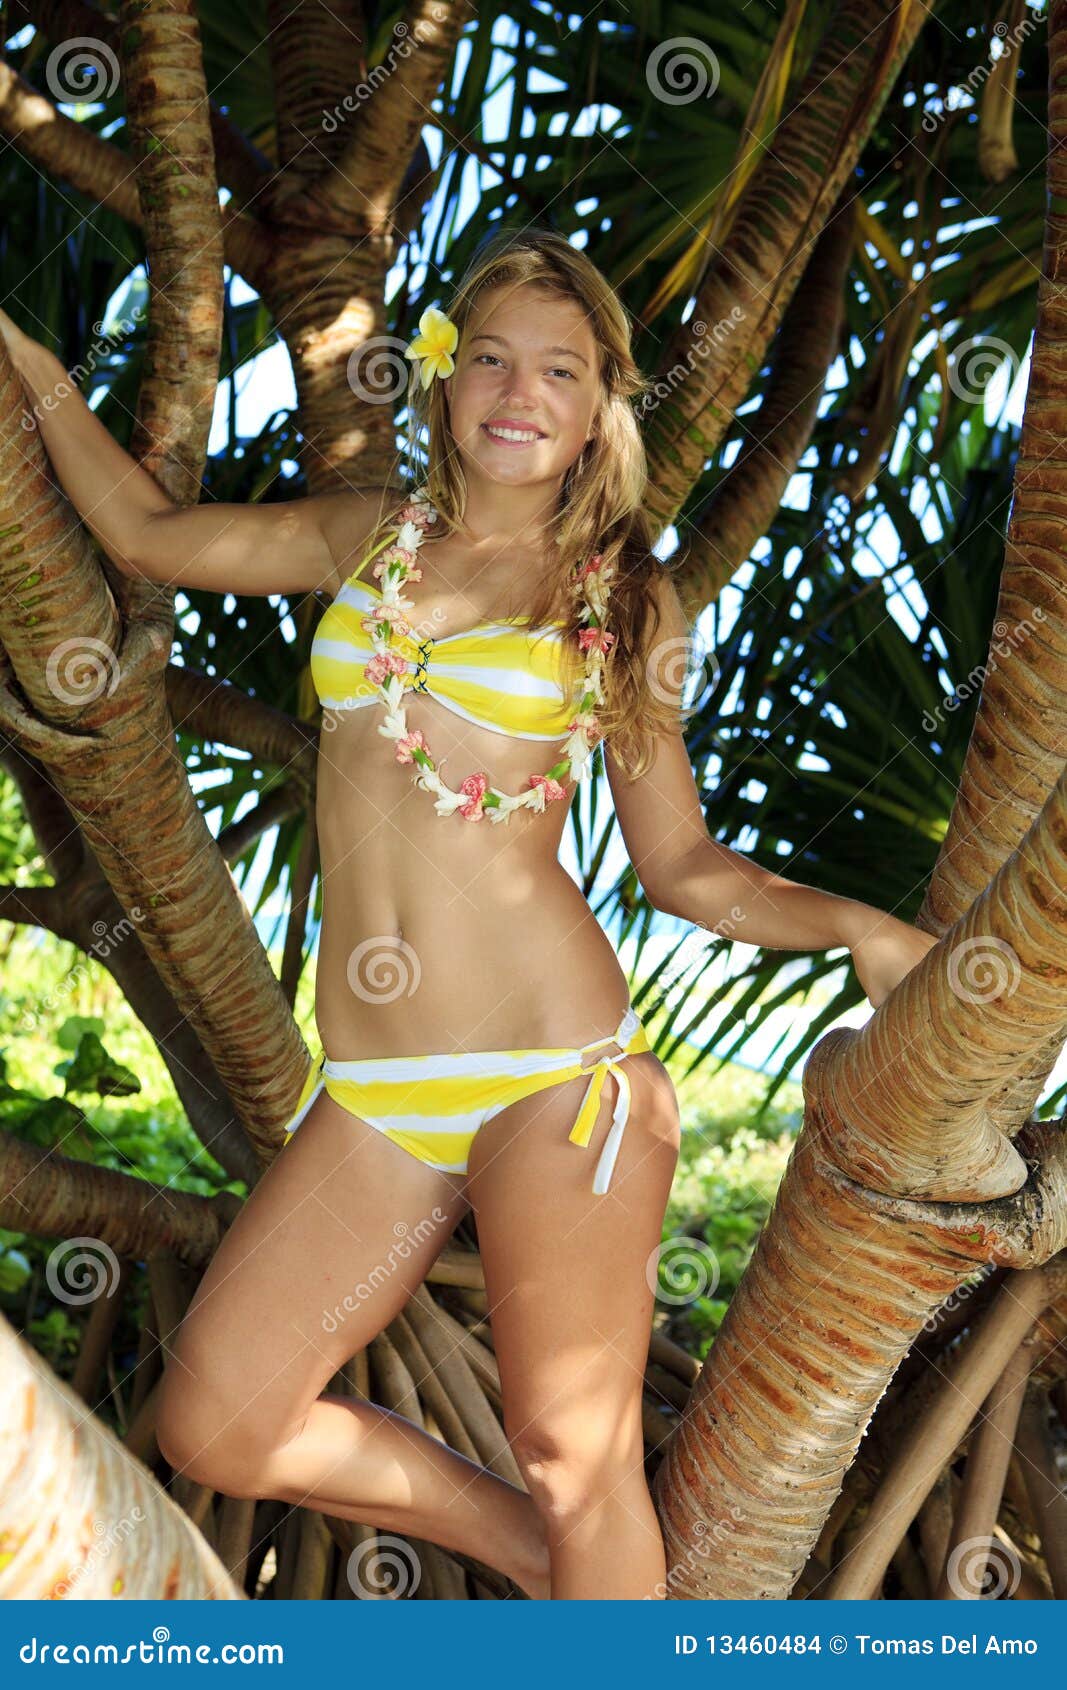 Nude Hawaii Teen Pictures 40